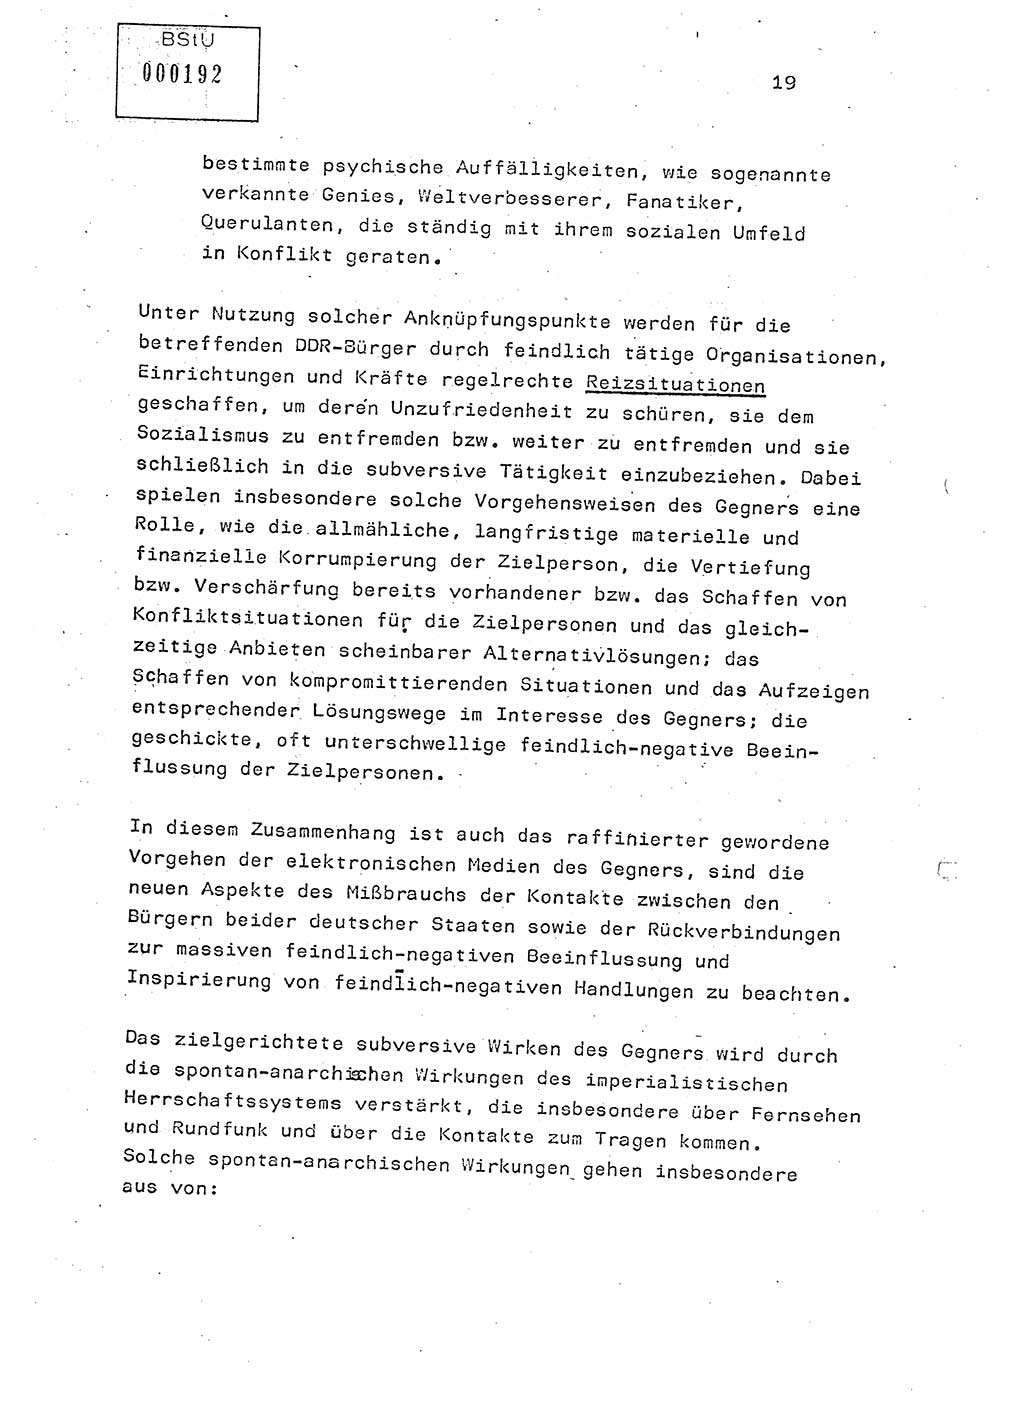 Studienmaterial Ministerium für Staatssicherheit (MfS) [Deutsche Demokratische Republik (DDR)], Hauptabteilung (HA) Ⅸ/ Auswertungs- und Kontrollgruppe (AKG), Berlin ca. 1986, Seite 19 (Stud.-Mat. MfS DDR HA Ⅸ/AKG 1986, S. 19)